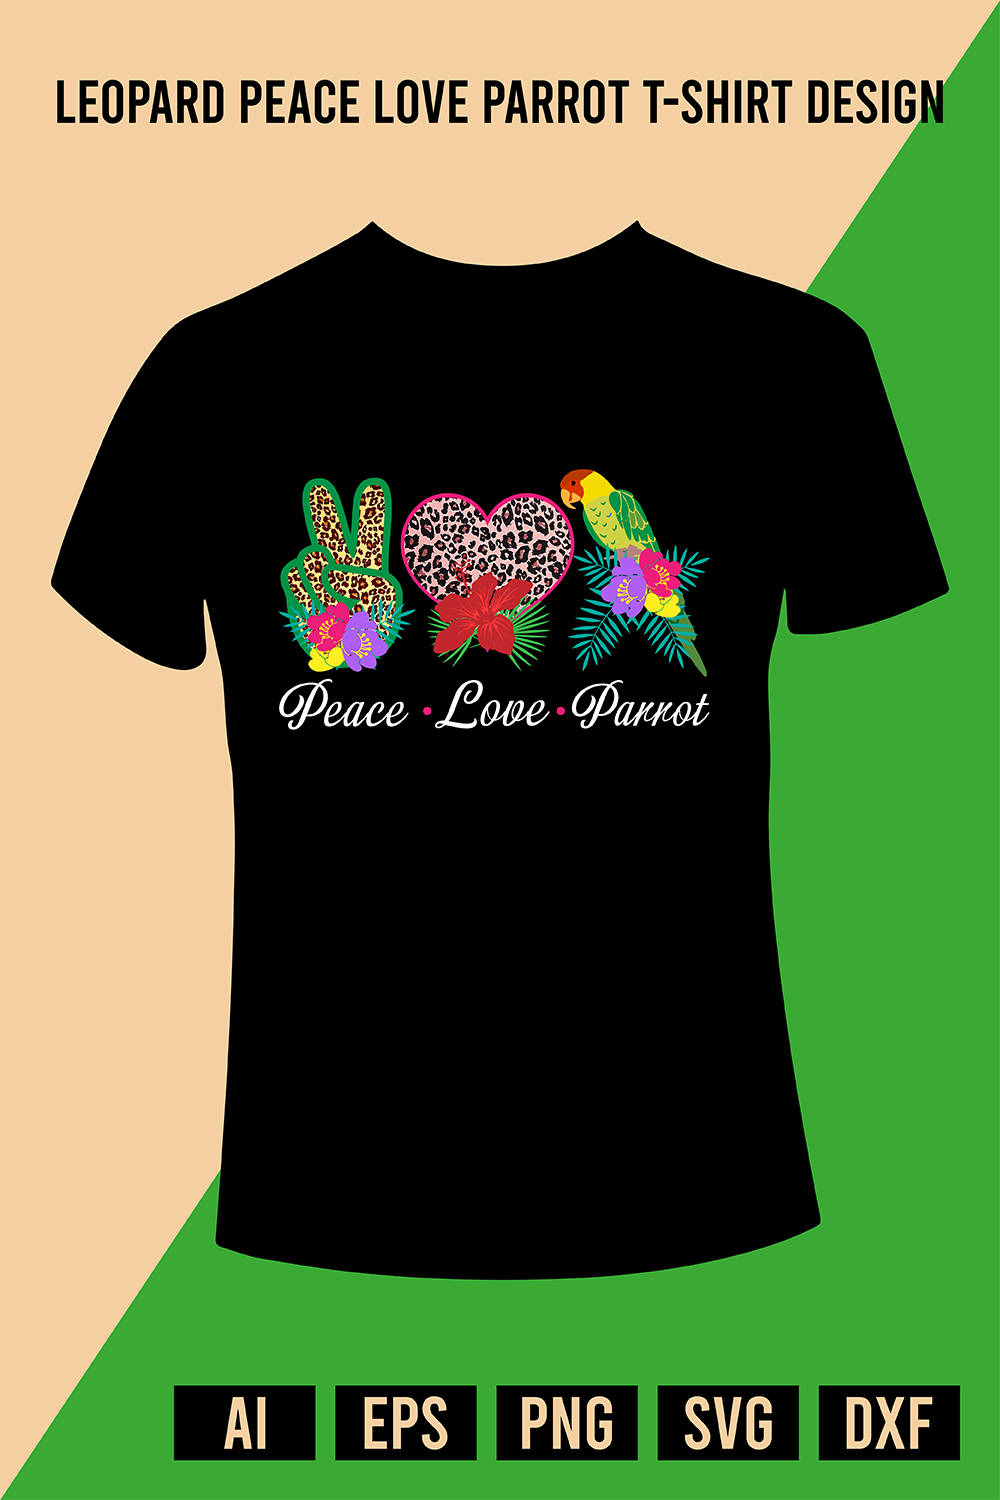 Leopard Peace Love Parrot T-Shirt Design pinterest preview image.